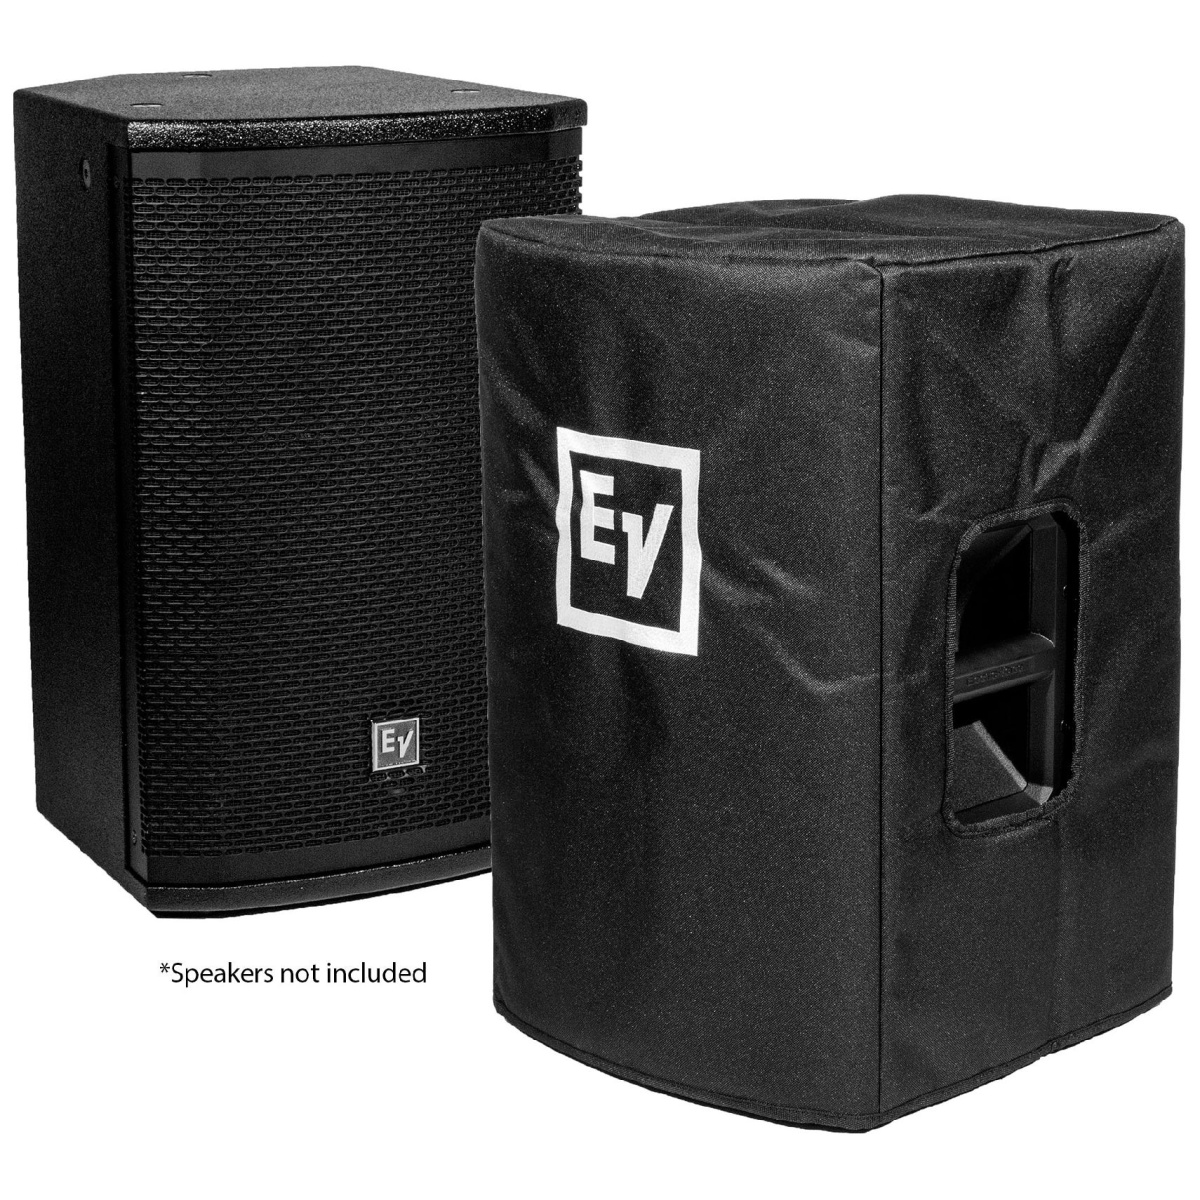 Electro-Voice ETX-10P-CVR чехол для акустической системы ETX-10P, цвет черный